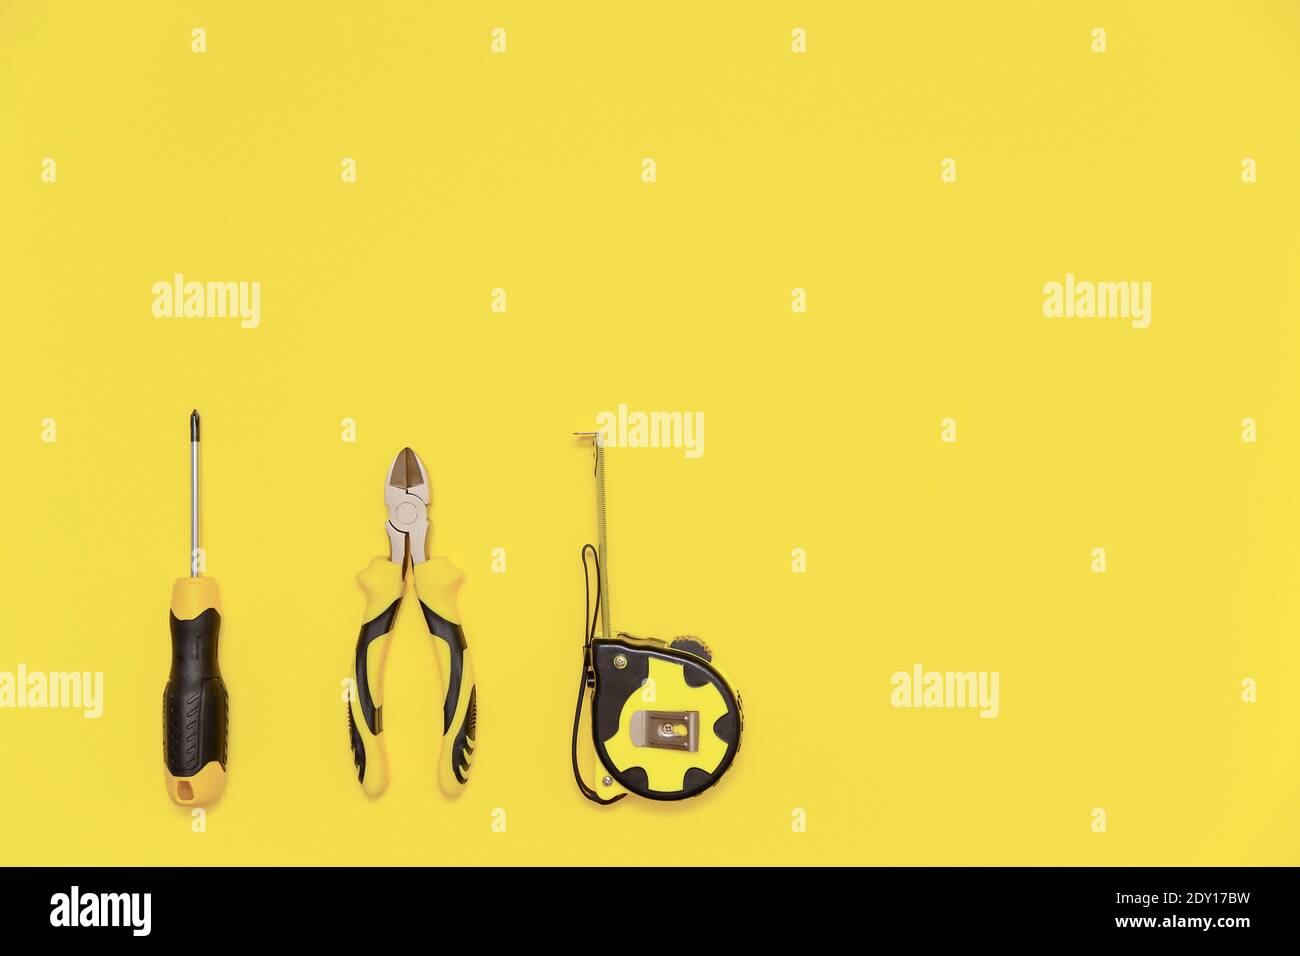 Eine Flachlage mit einem Satz von Tischwerkzeugen, Schraubendreher, Schneidzange und Band messen auf gelb leuchtenden Hintergrund. Farben des Jahres 2021. Stockfoto